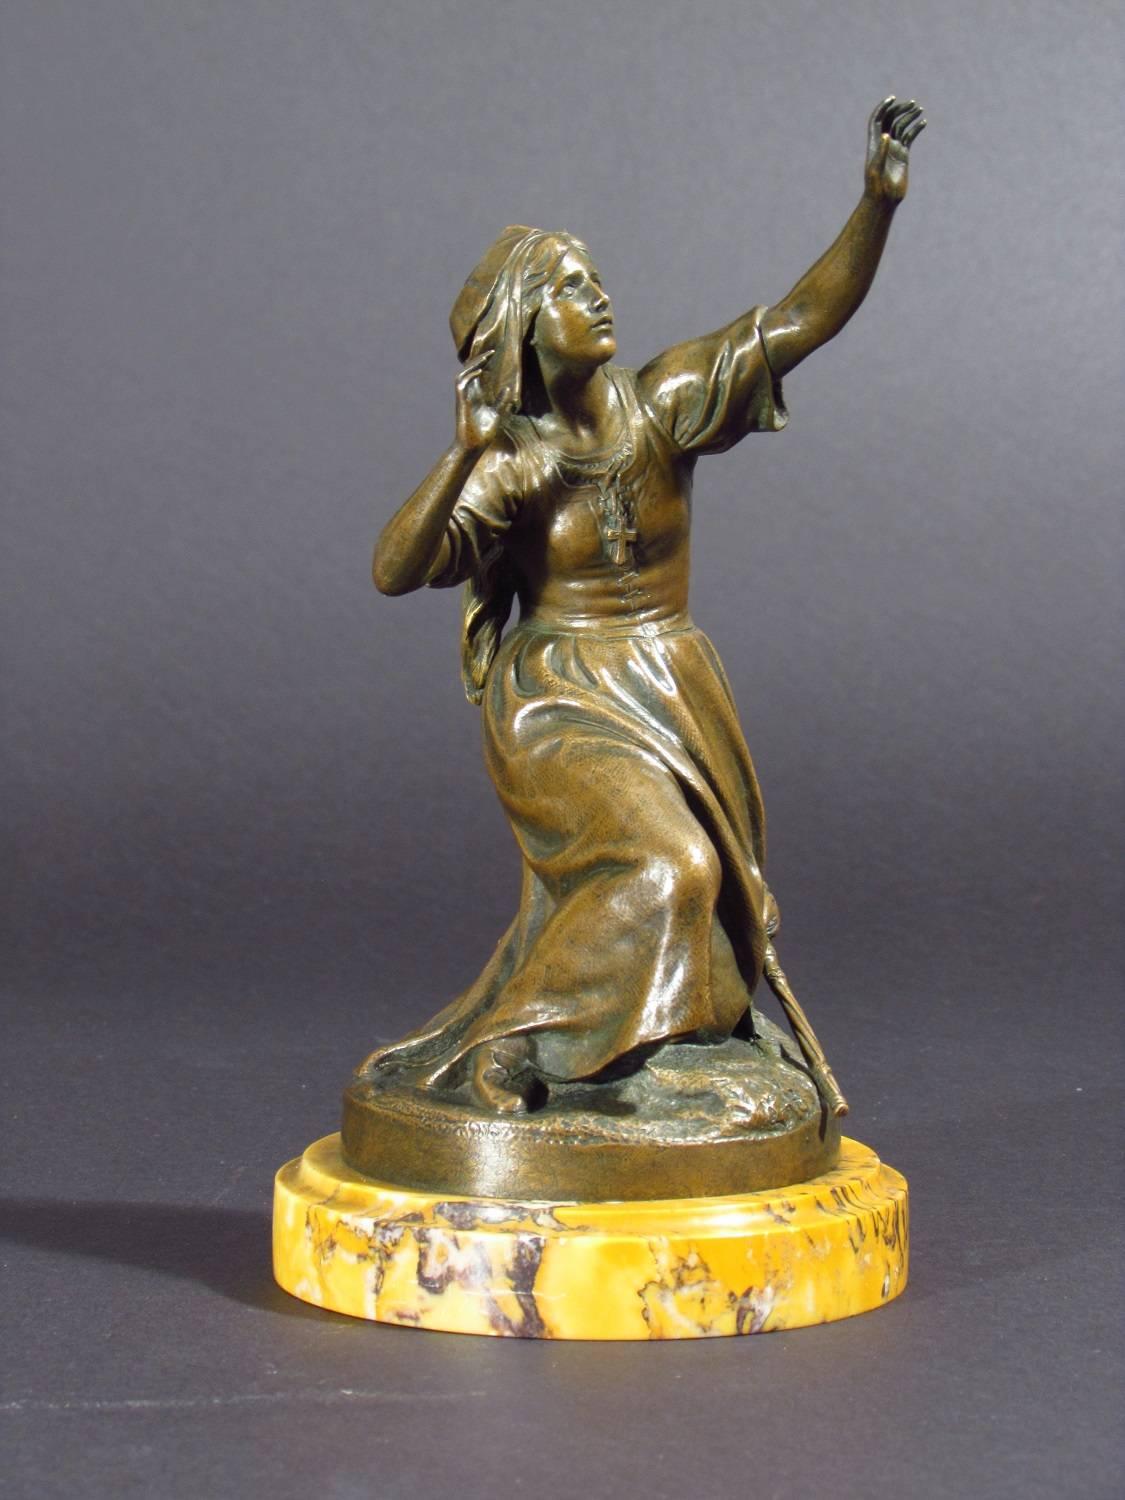 Joan of Arc - Gold Figurative Sculpture by André Joseph Allar